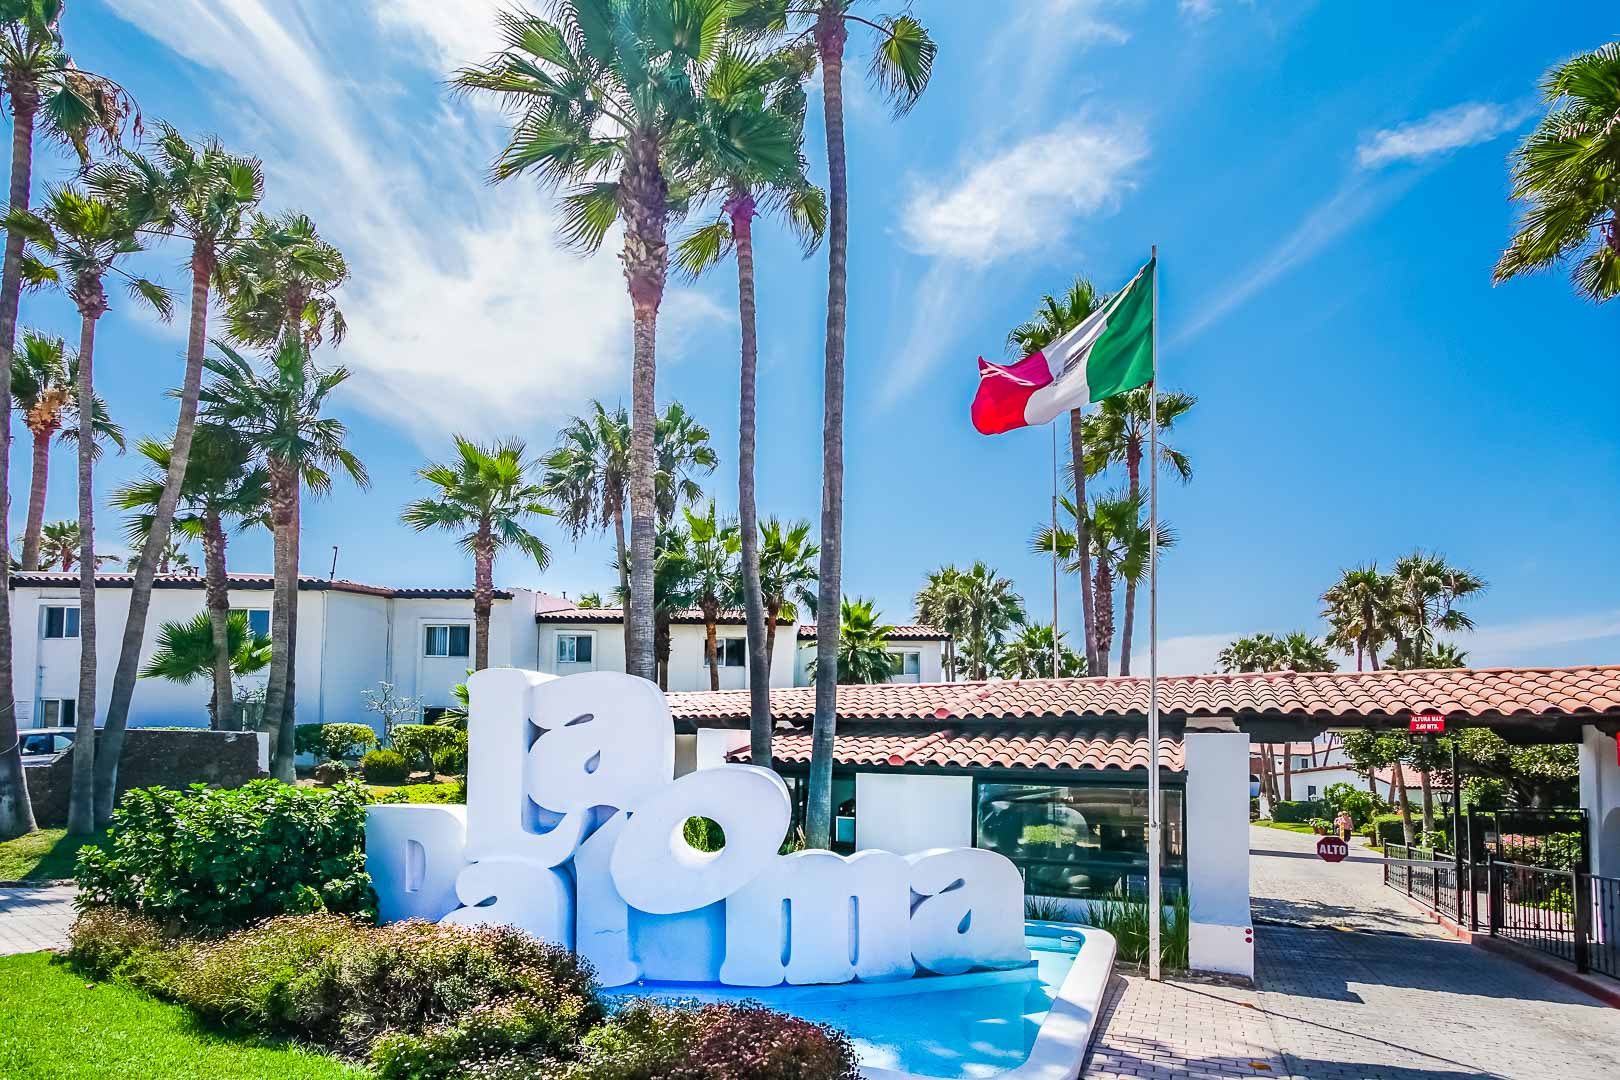 A vibrant resort signage at VRI's La Paloma in Rosarito, Mexico.